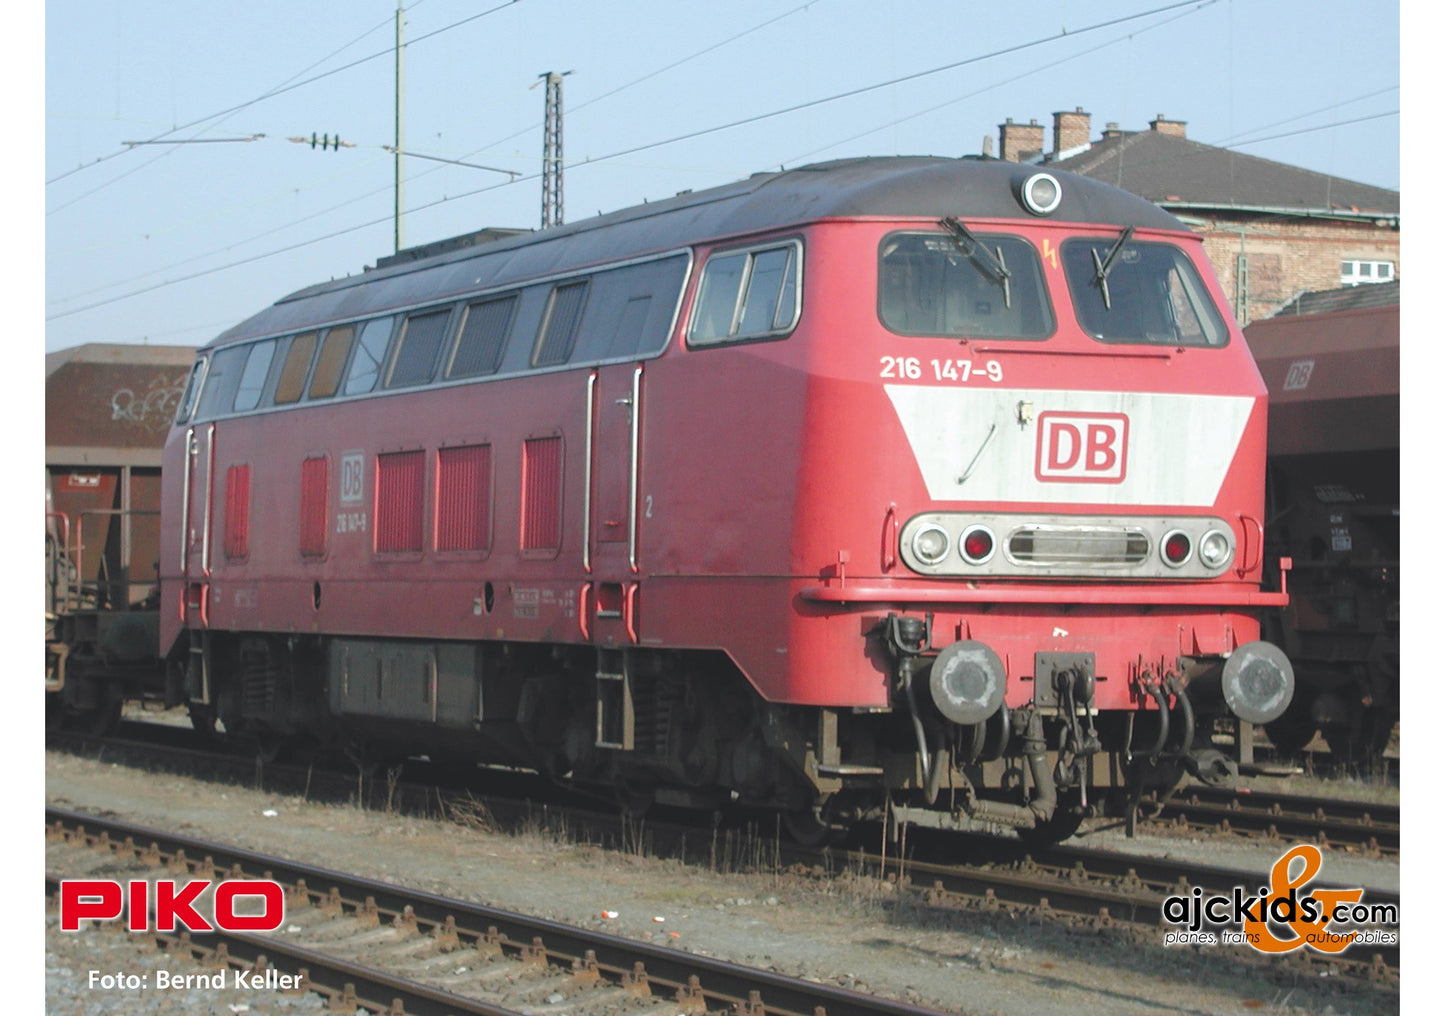 Piko 52414 - Br 216 Diesel Locomotive DB "Bib scheme" V Sound